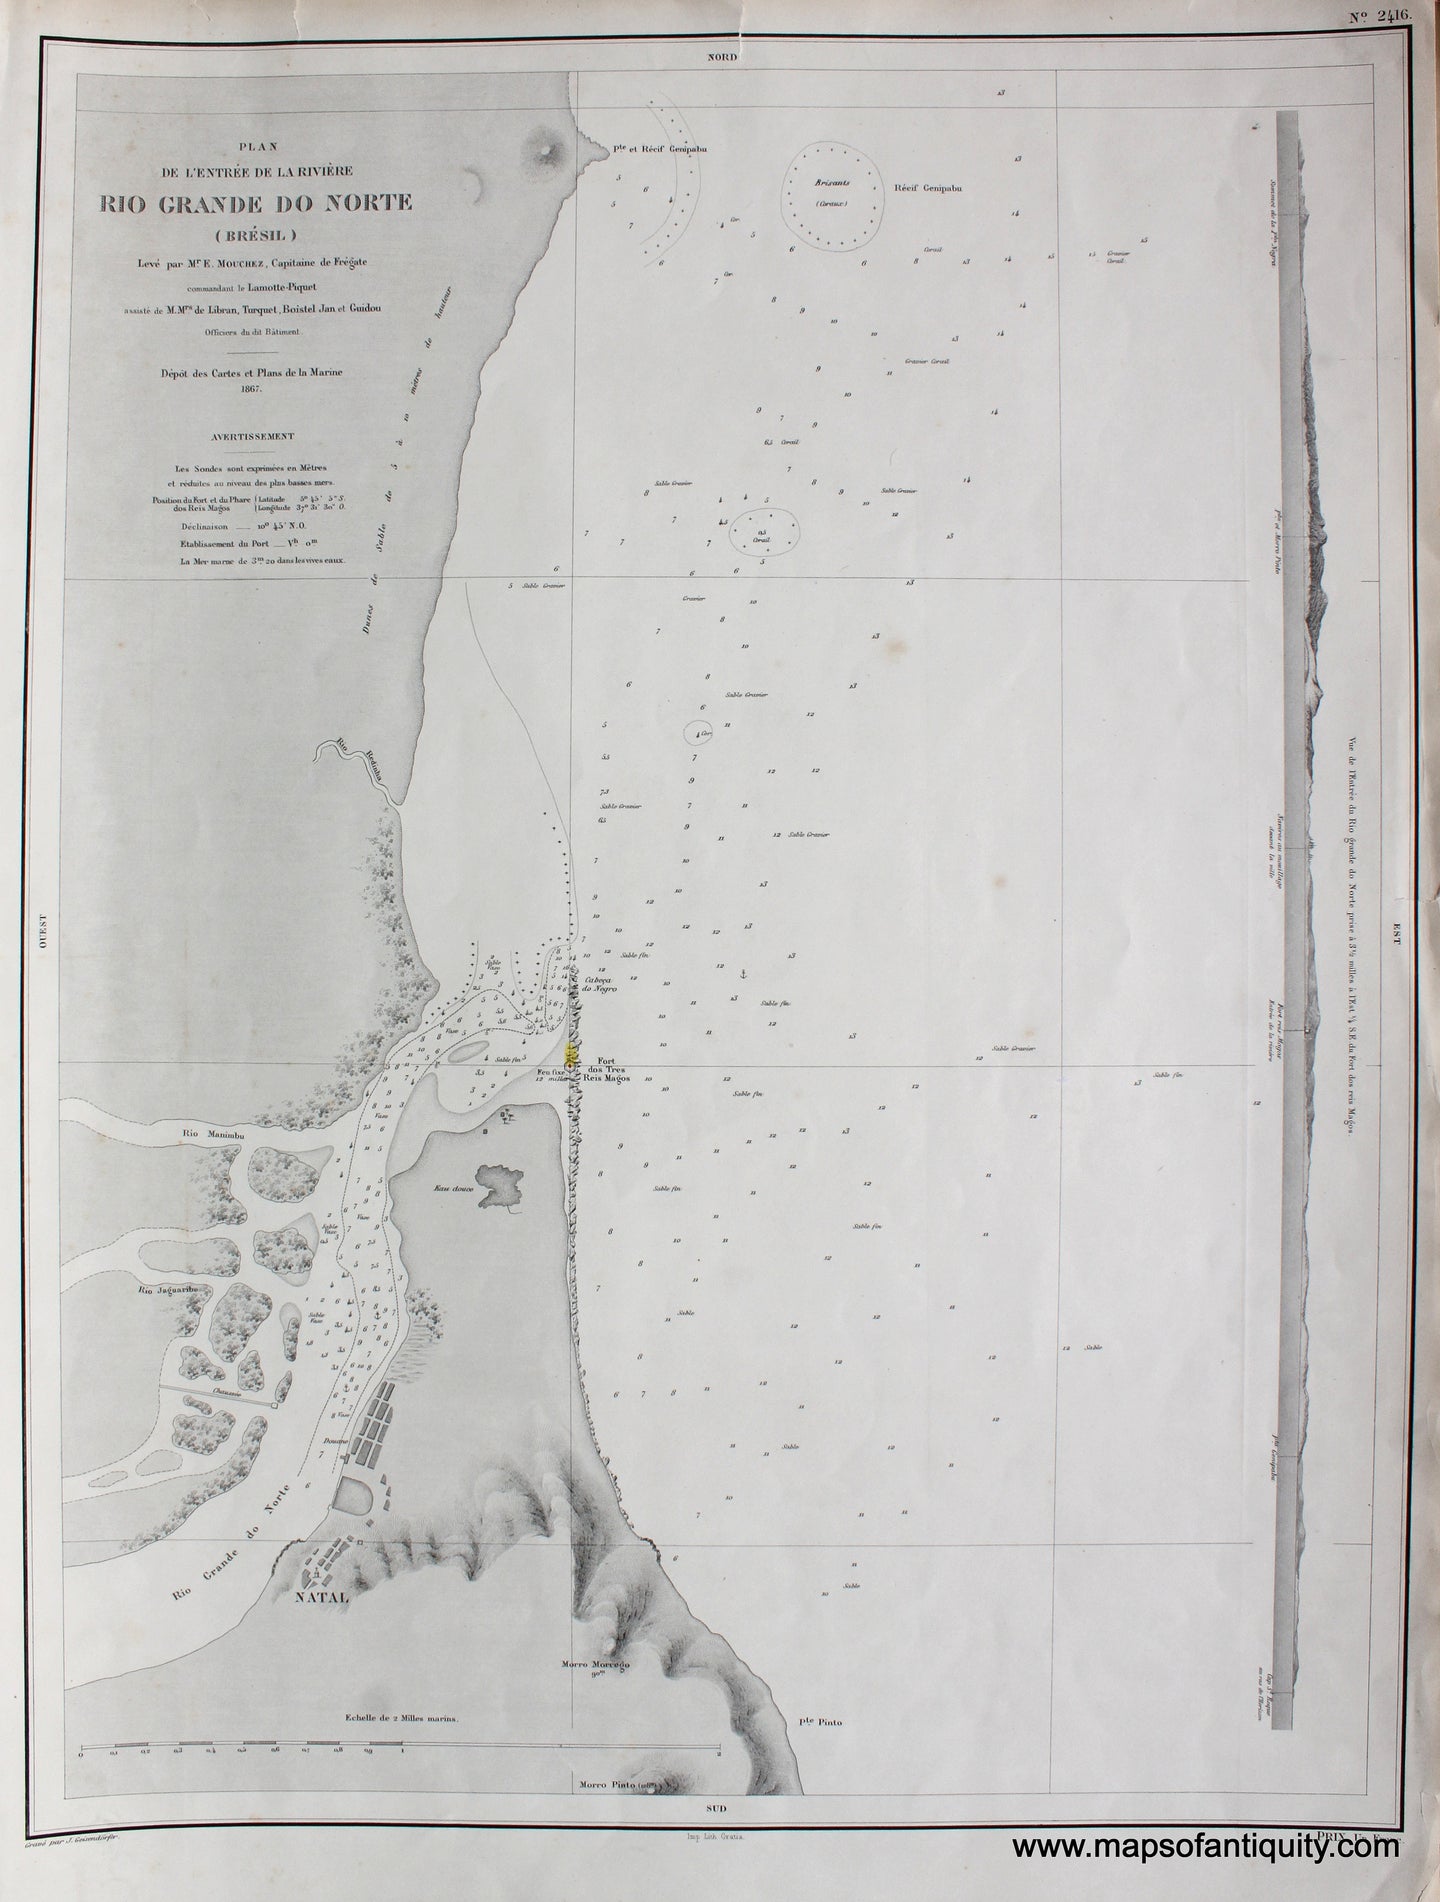 Antique-Black-and-White-Nautical-Chart-Plan-de-l'EntrÃƒÆ’Ã‚Â©e-de-la-Riviere-Rio-Grande-do-Norte-Brazil-South-America-Brazil-1867-Depot-de-la-Marine-Maps-Of-Antiquity